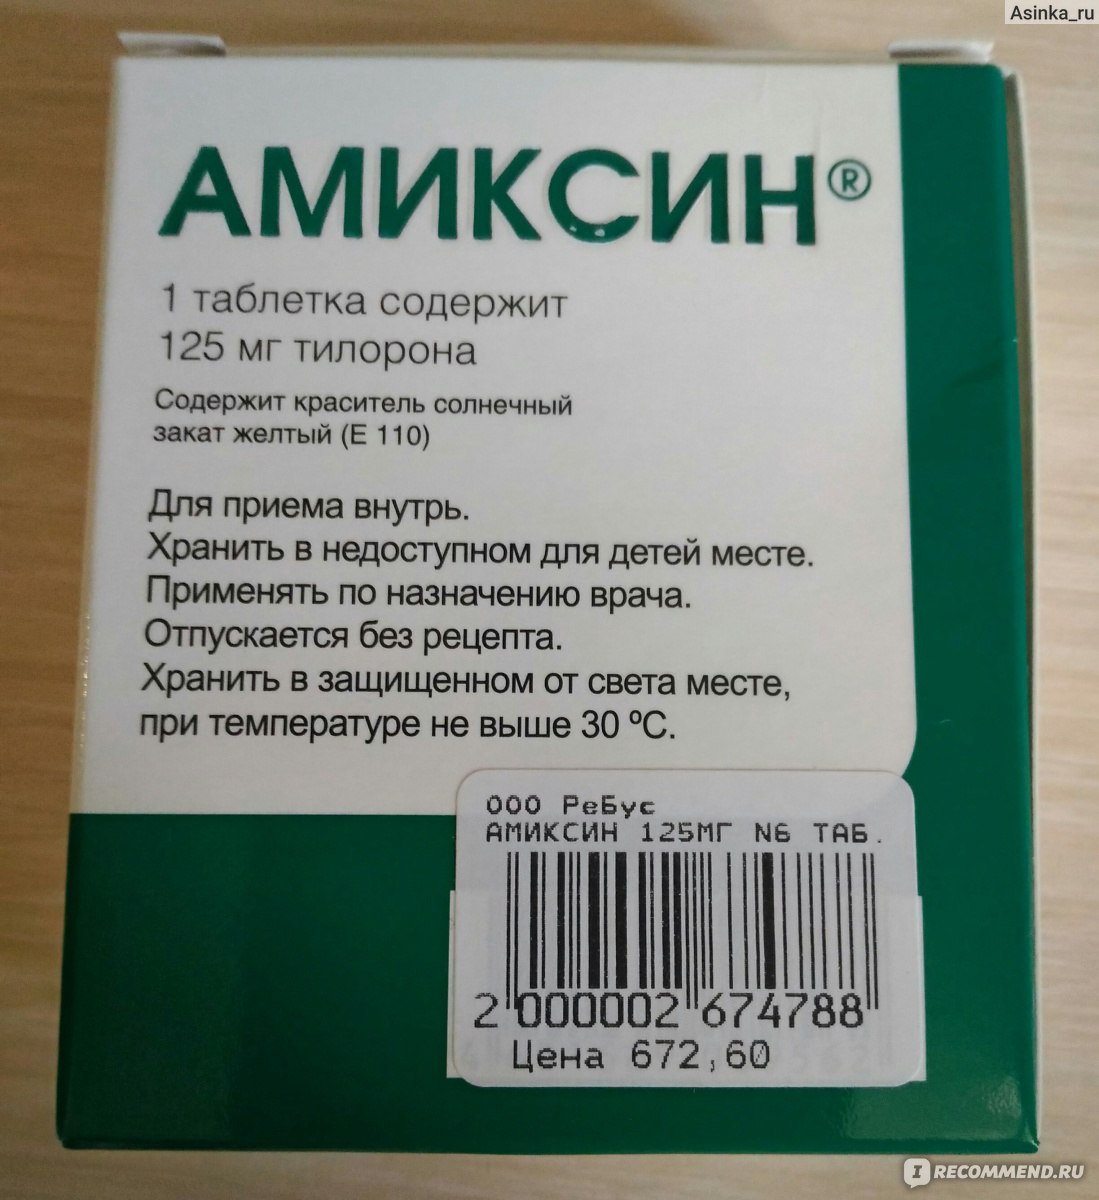 Тилорон инструкция по применению цена 125 мг. Противовирусные препараты Амиксин. Амиксин таблетки Фармстандарт. Амиксин тилорон 125. Амиксин 125 по 3 таблетки.